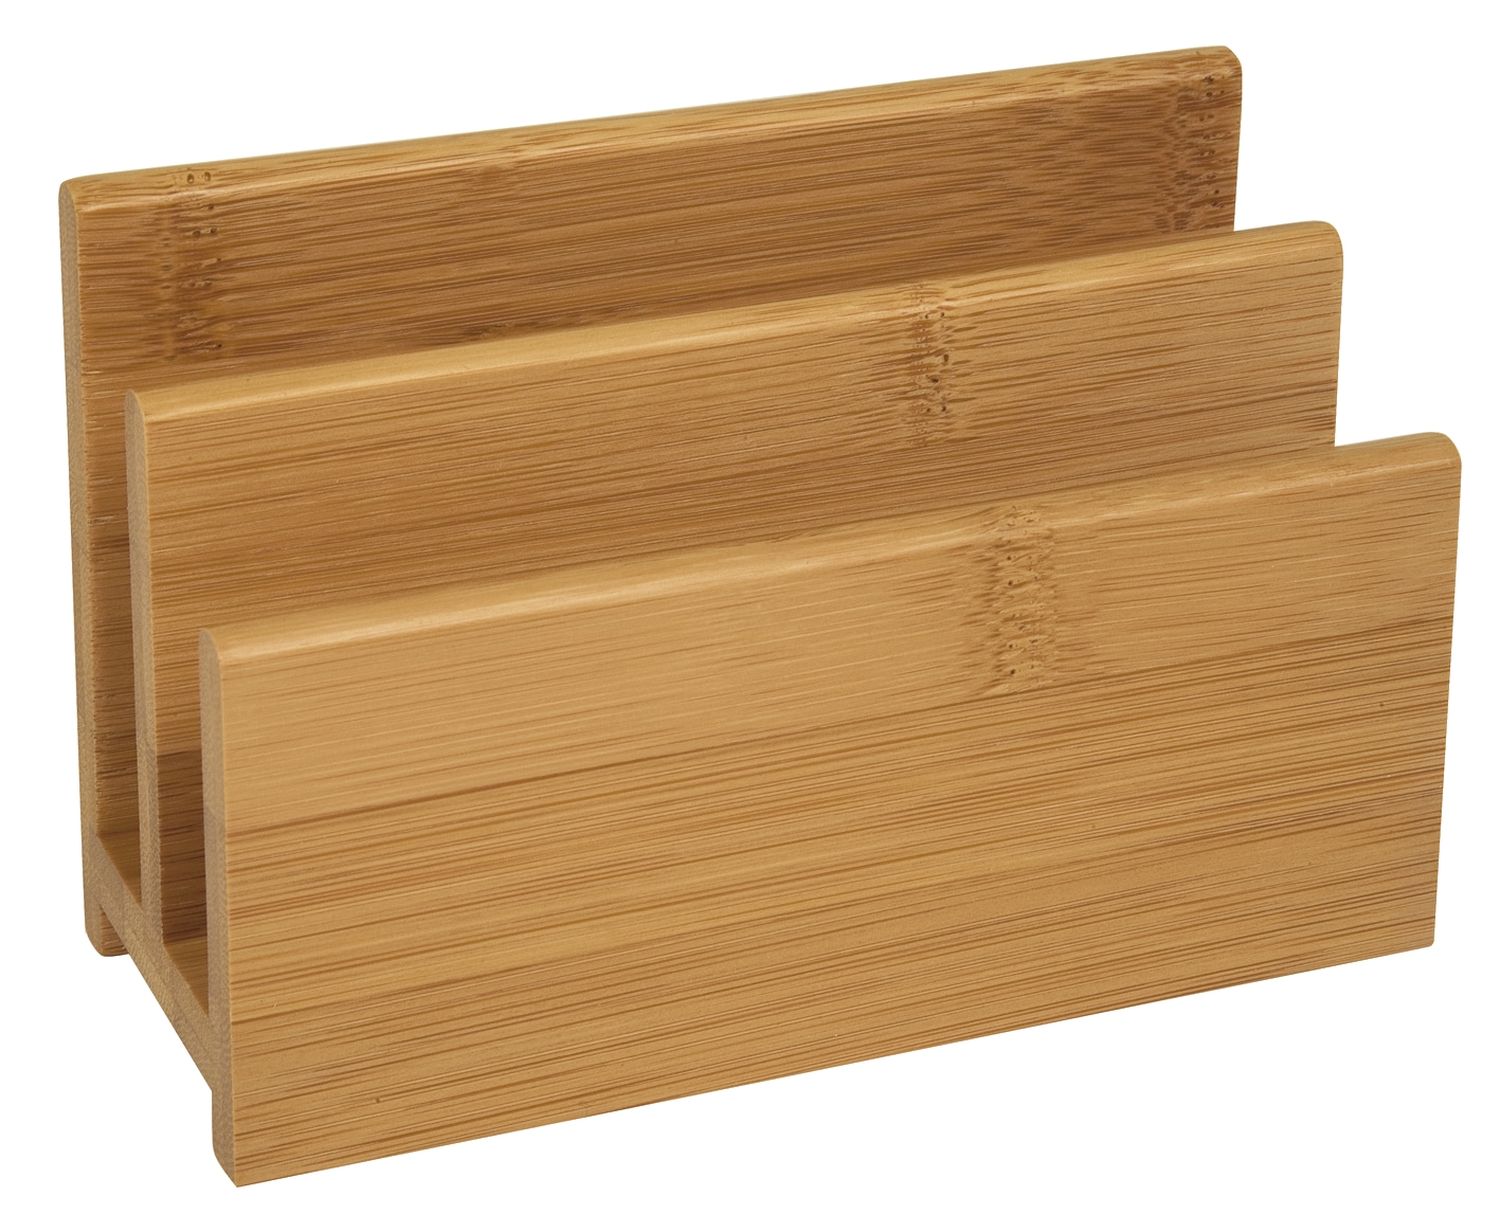 Briefständer Wedo Bambus 61307, 2 Fächer, aus Holz, braun